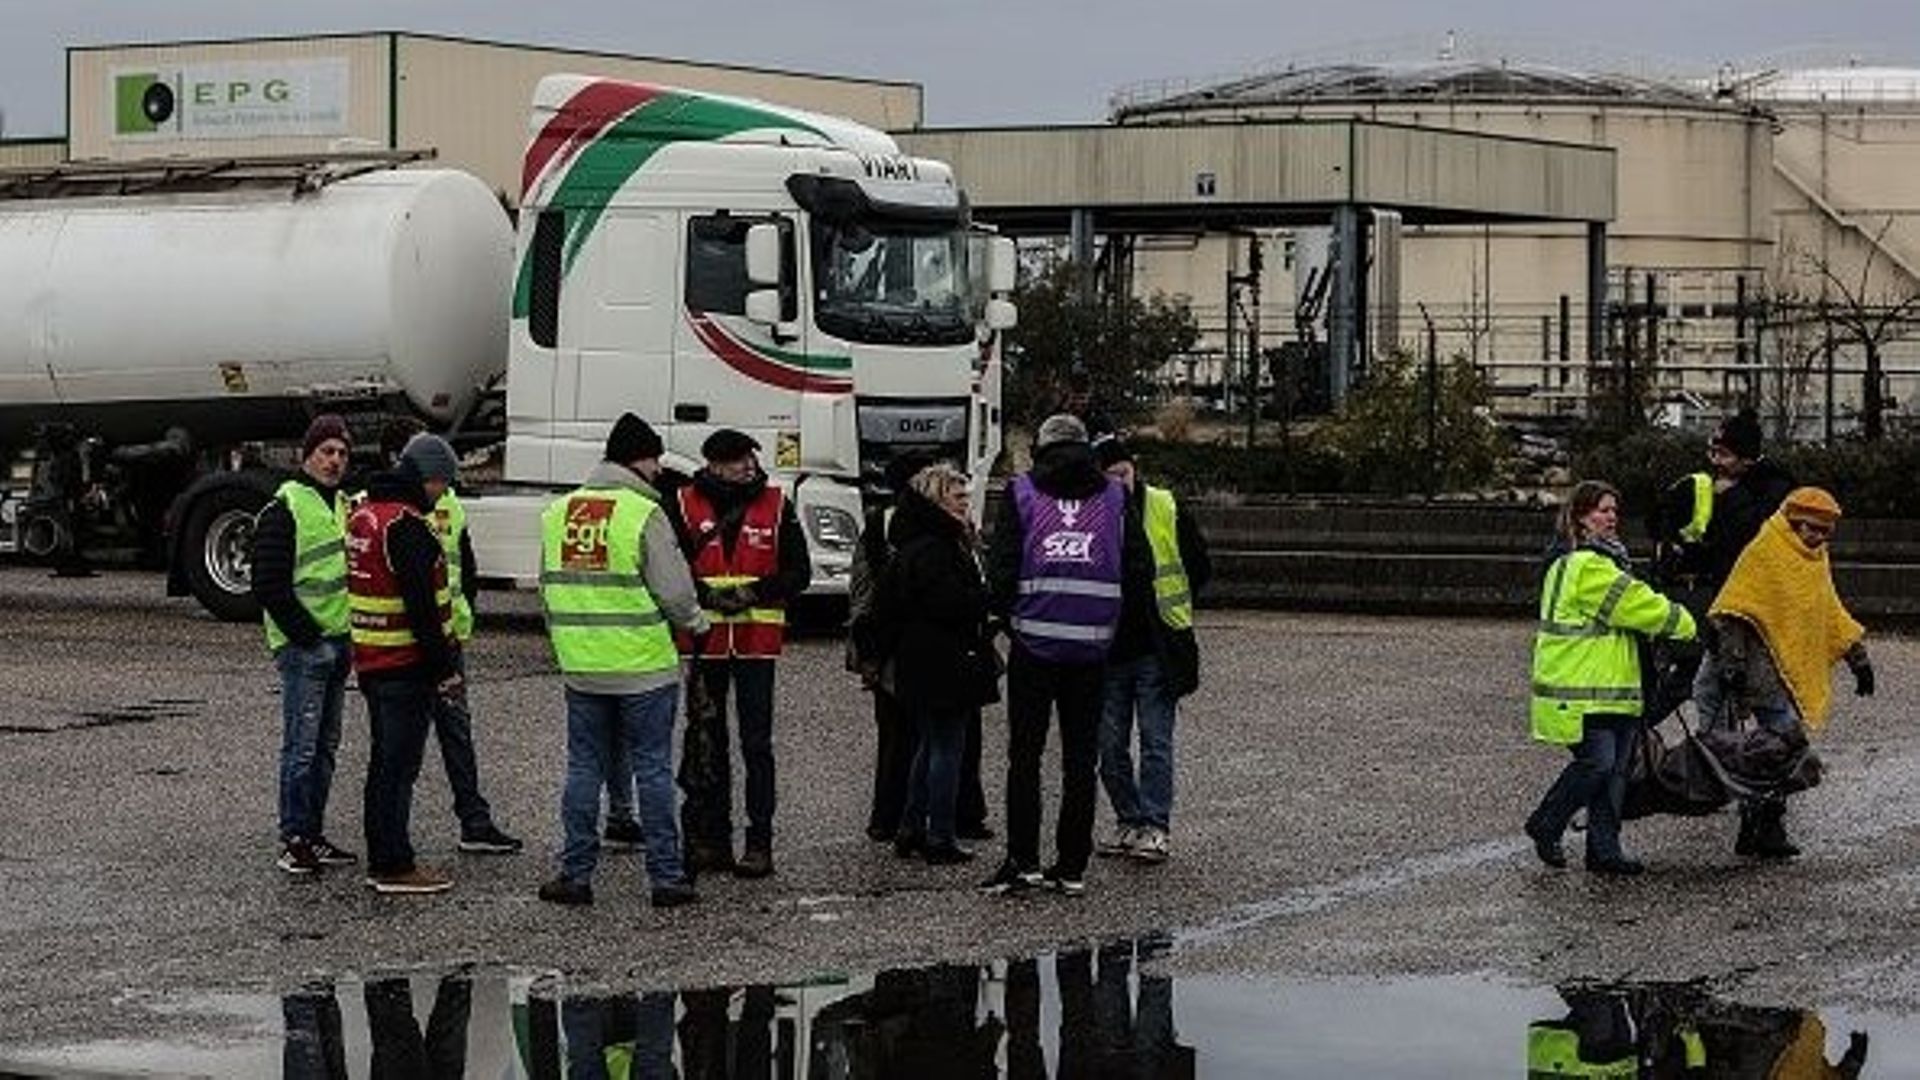 Des manifestants se tiennent devant l'entrepôt pétrolier EPG (Entrepot pétrolier de la Gironde) après avoir levé le blocage à Ambes, dans l'ouest de la France, le 08 mars 2023, au lendemain des rassemblements nationaux organisés depuis le début de l'année